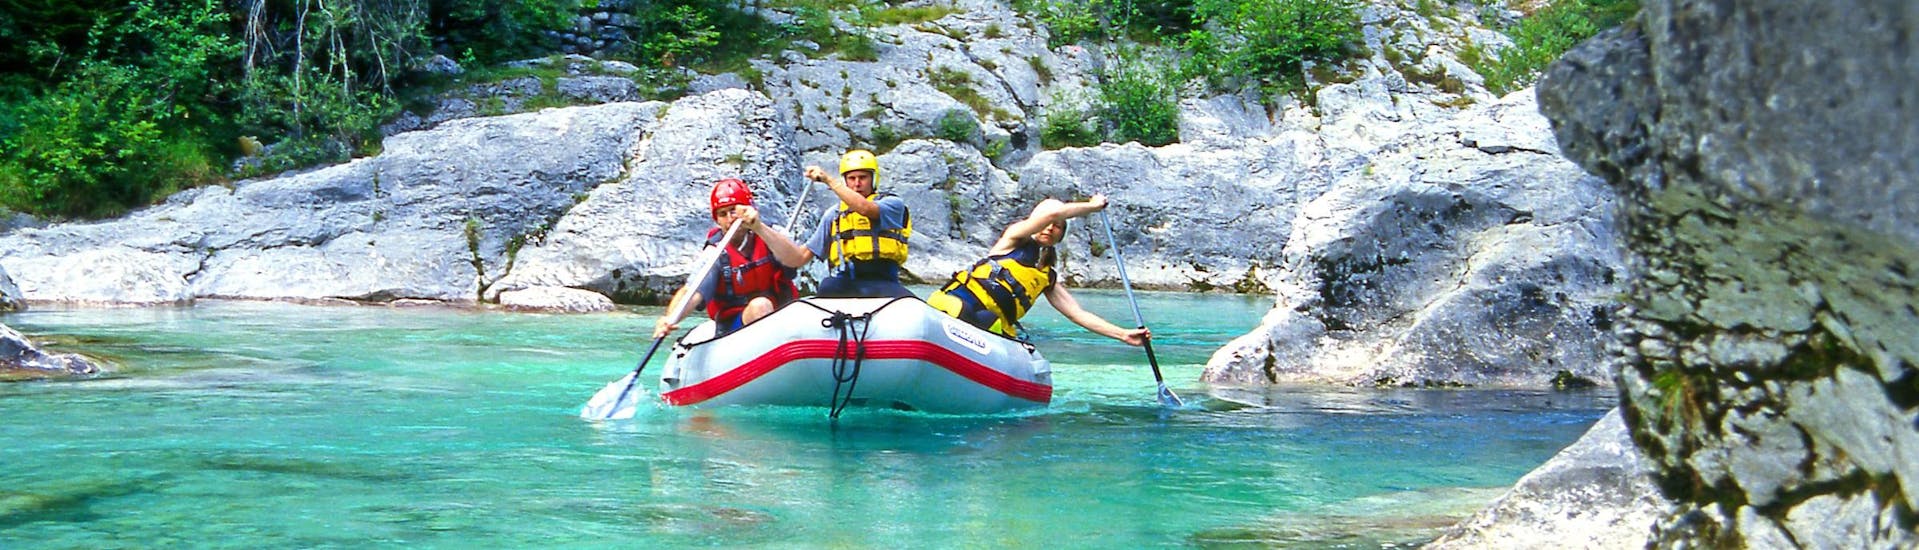 Emozioni forti vissute da un gruppo di giovani nel punto di interesse Učja Valley, ideale per fare rafting e canyoning.